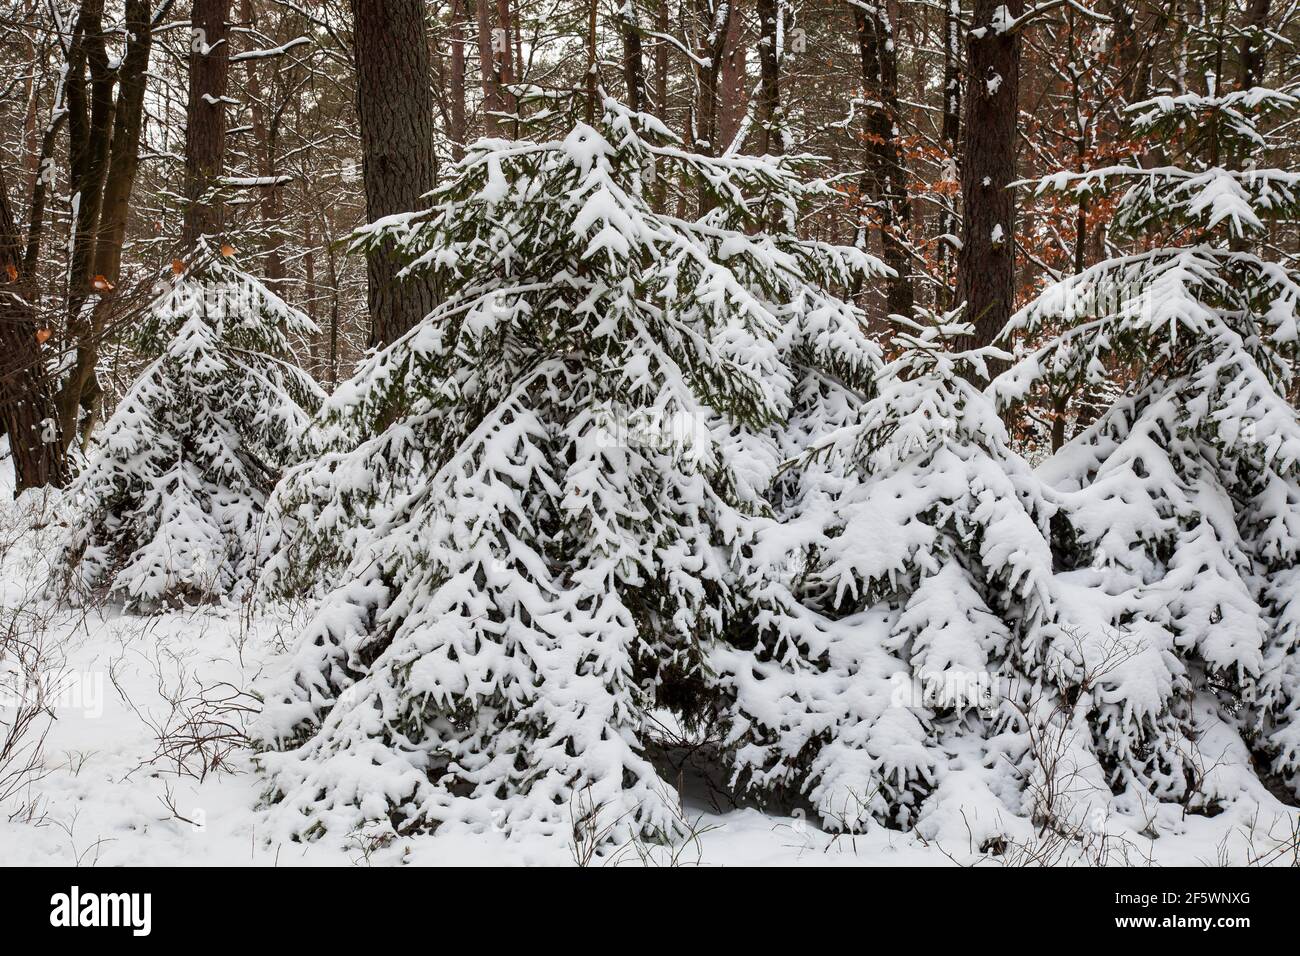 Paisaje forestal, pinos cubiertos de nieve y abedules en la reserva natural Fischbeker Heide en la nieve, distrito de Harburg, Hamburgo, Alemania, Europa Foto de stock